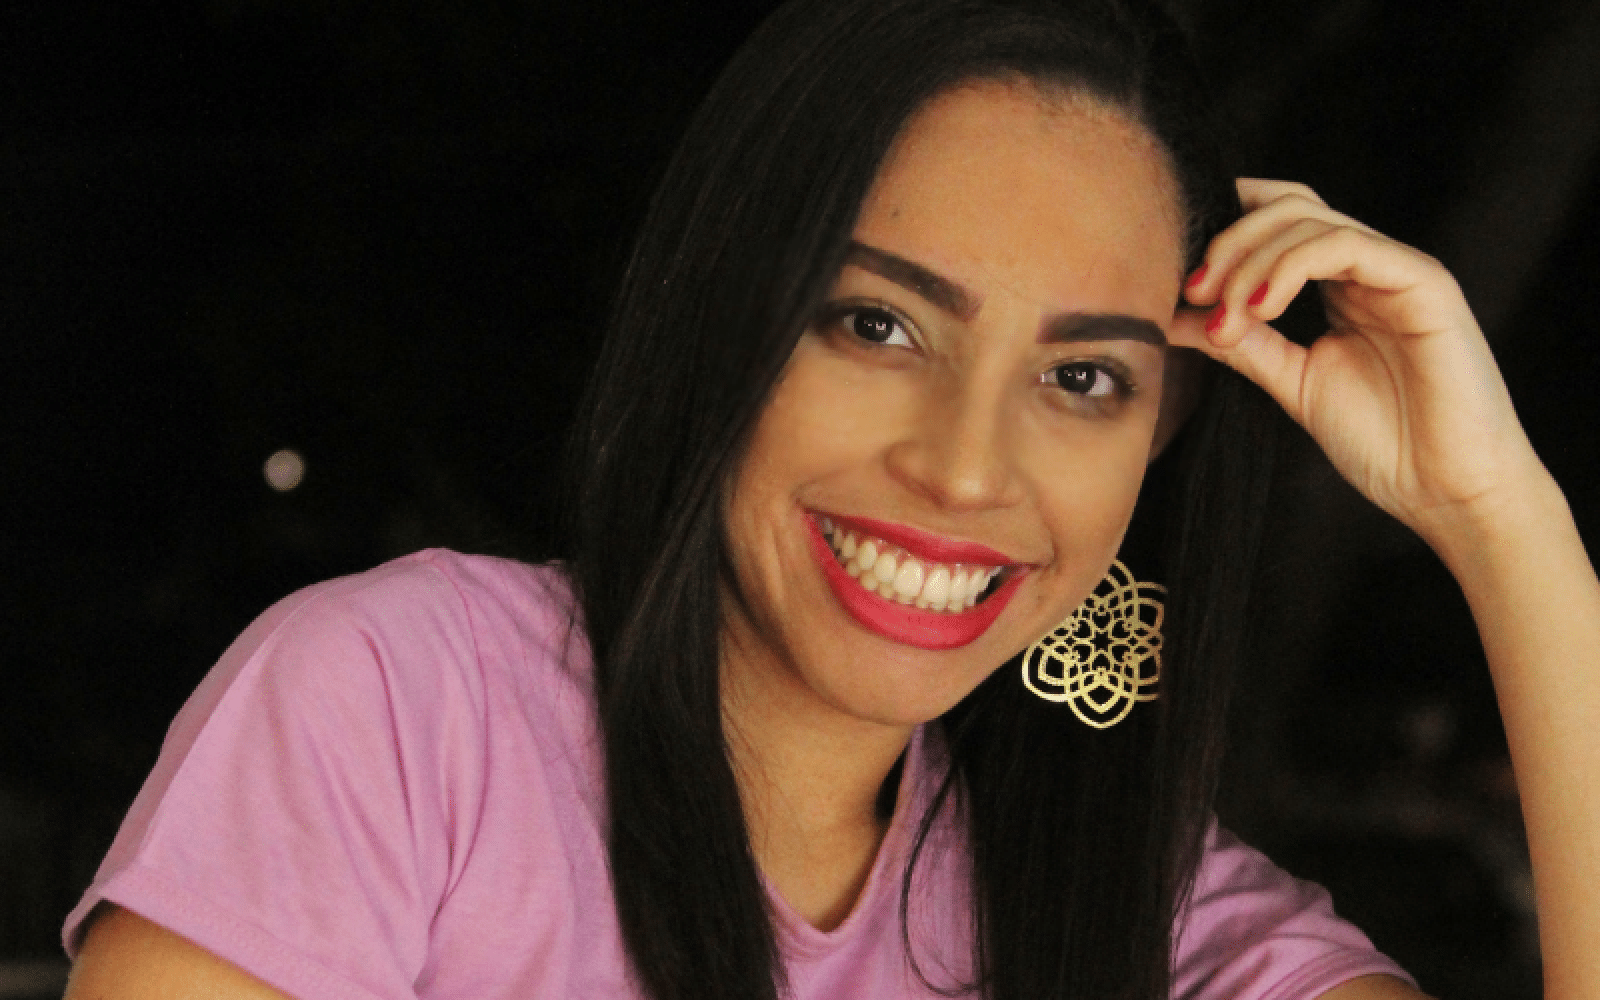 Mariana Nunes